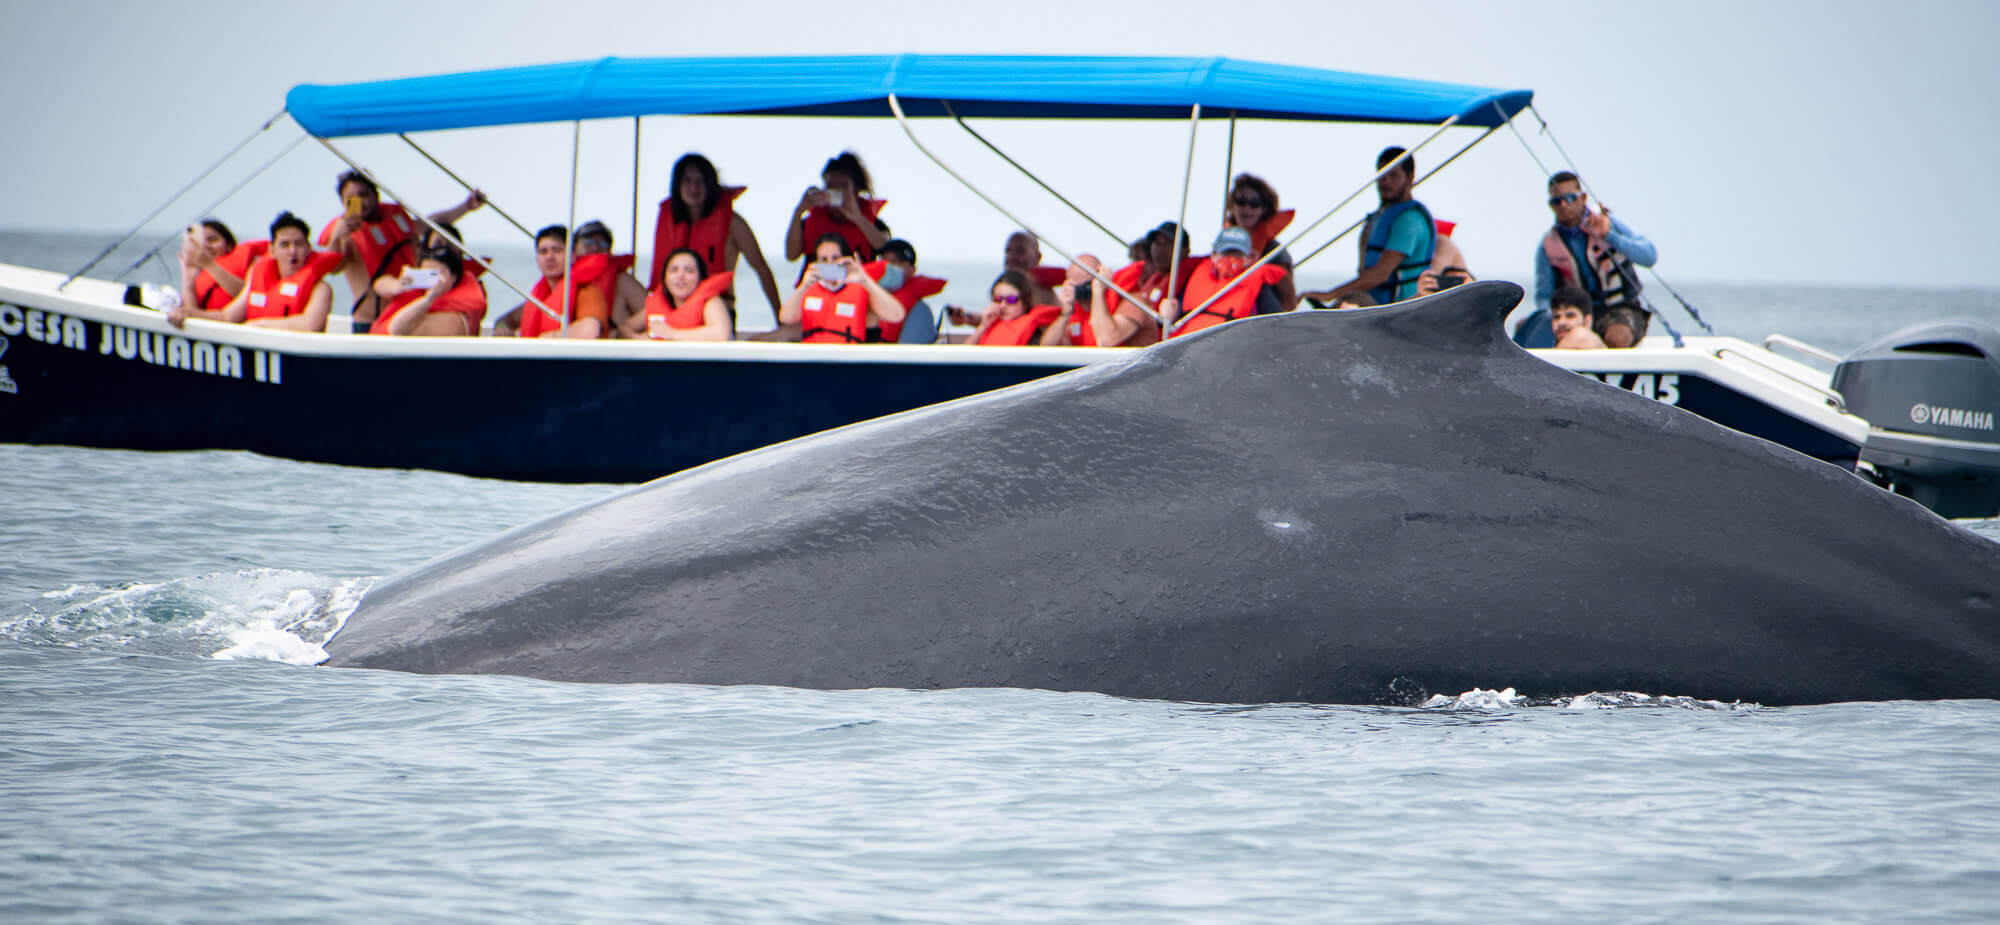 Ver ballenas en Costa Rica, ¿cómo conseguirlo en Marino Ballena?